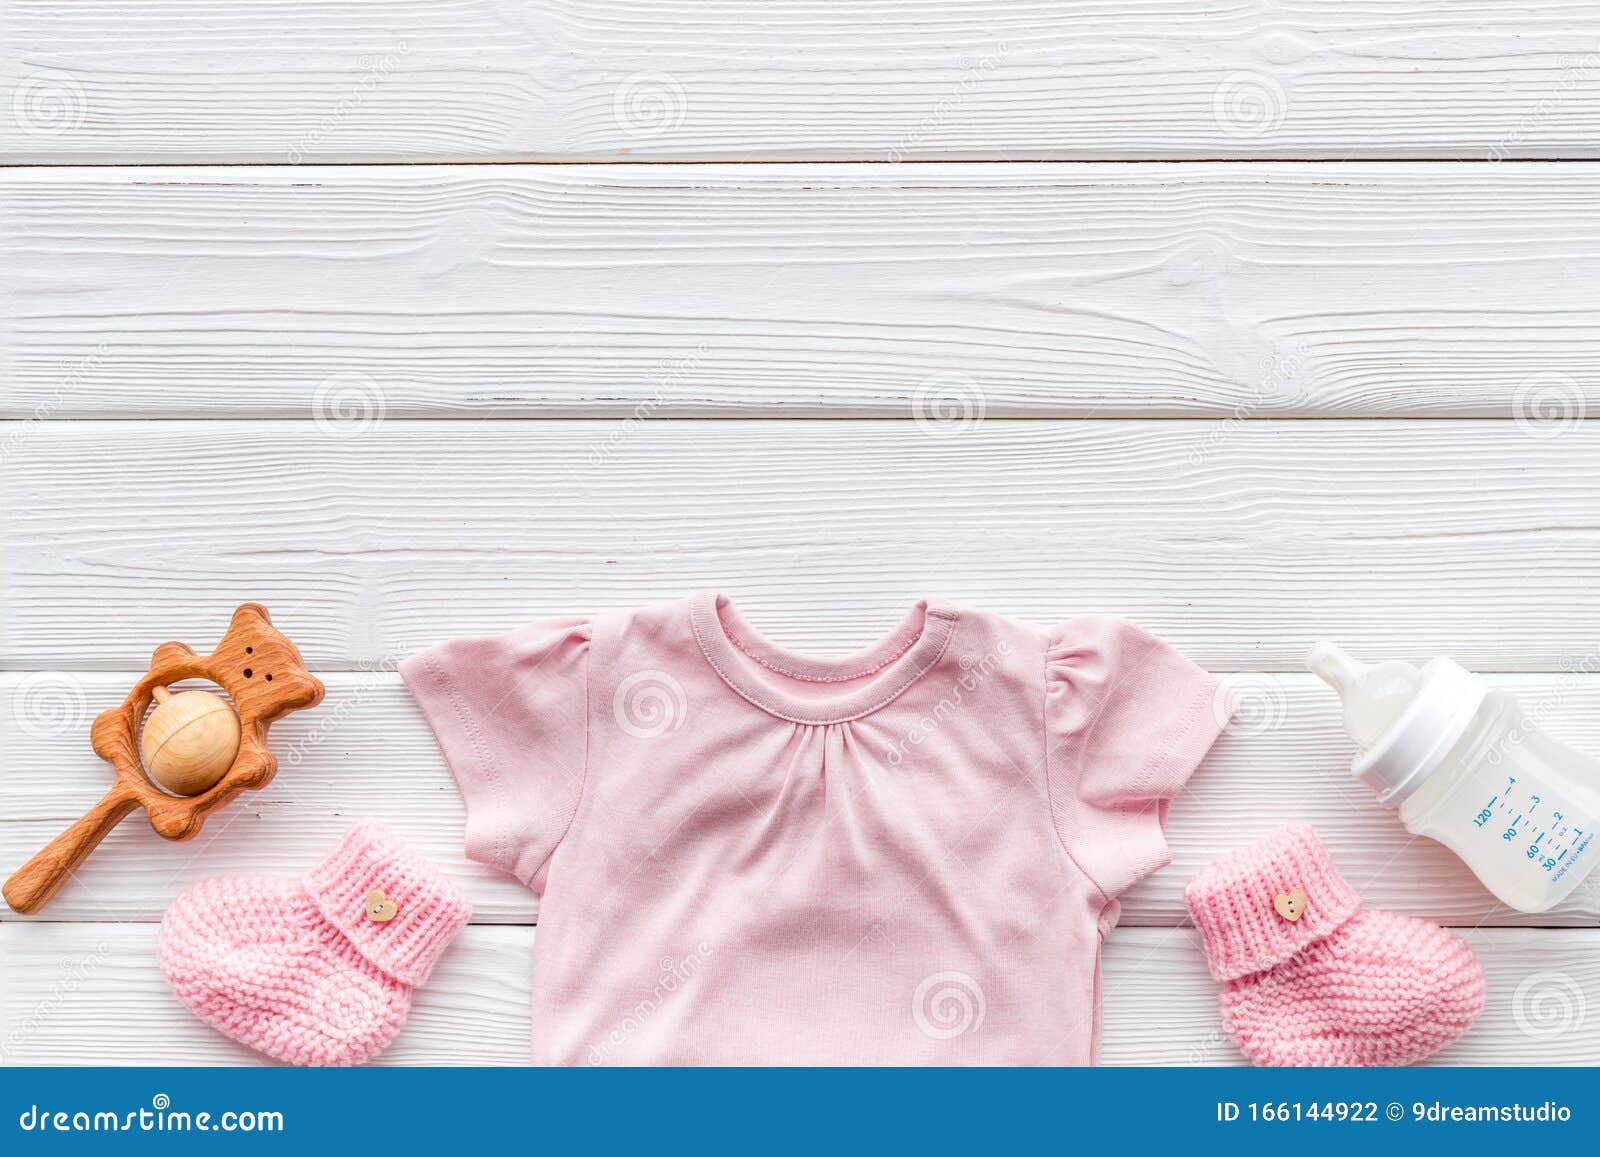 Hình nền trẻ sơ sinh màu hồng pastel là sự kết hợp hoàn hảo giữa sự dịu dàng, tinh tế và đáng yêu. Với vô số các hình ảnh này, bạn sẽ có được một không gian nội thất đầy cảm hứng và tình yêu cho trẻ sơ sinh của mình. Hãy cùng đón xem những hình ảnh đáng yêu này nhé.